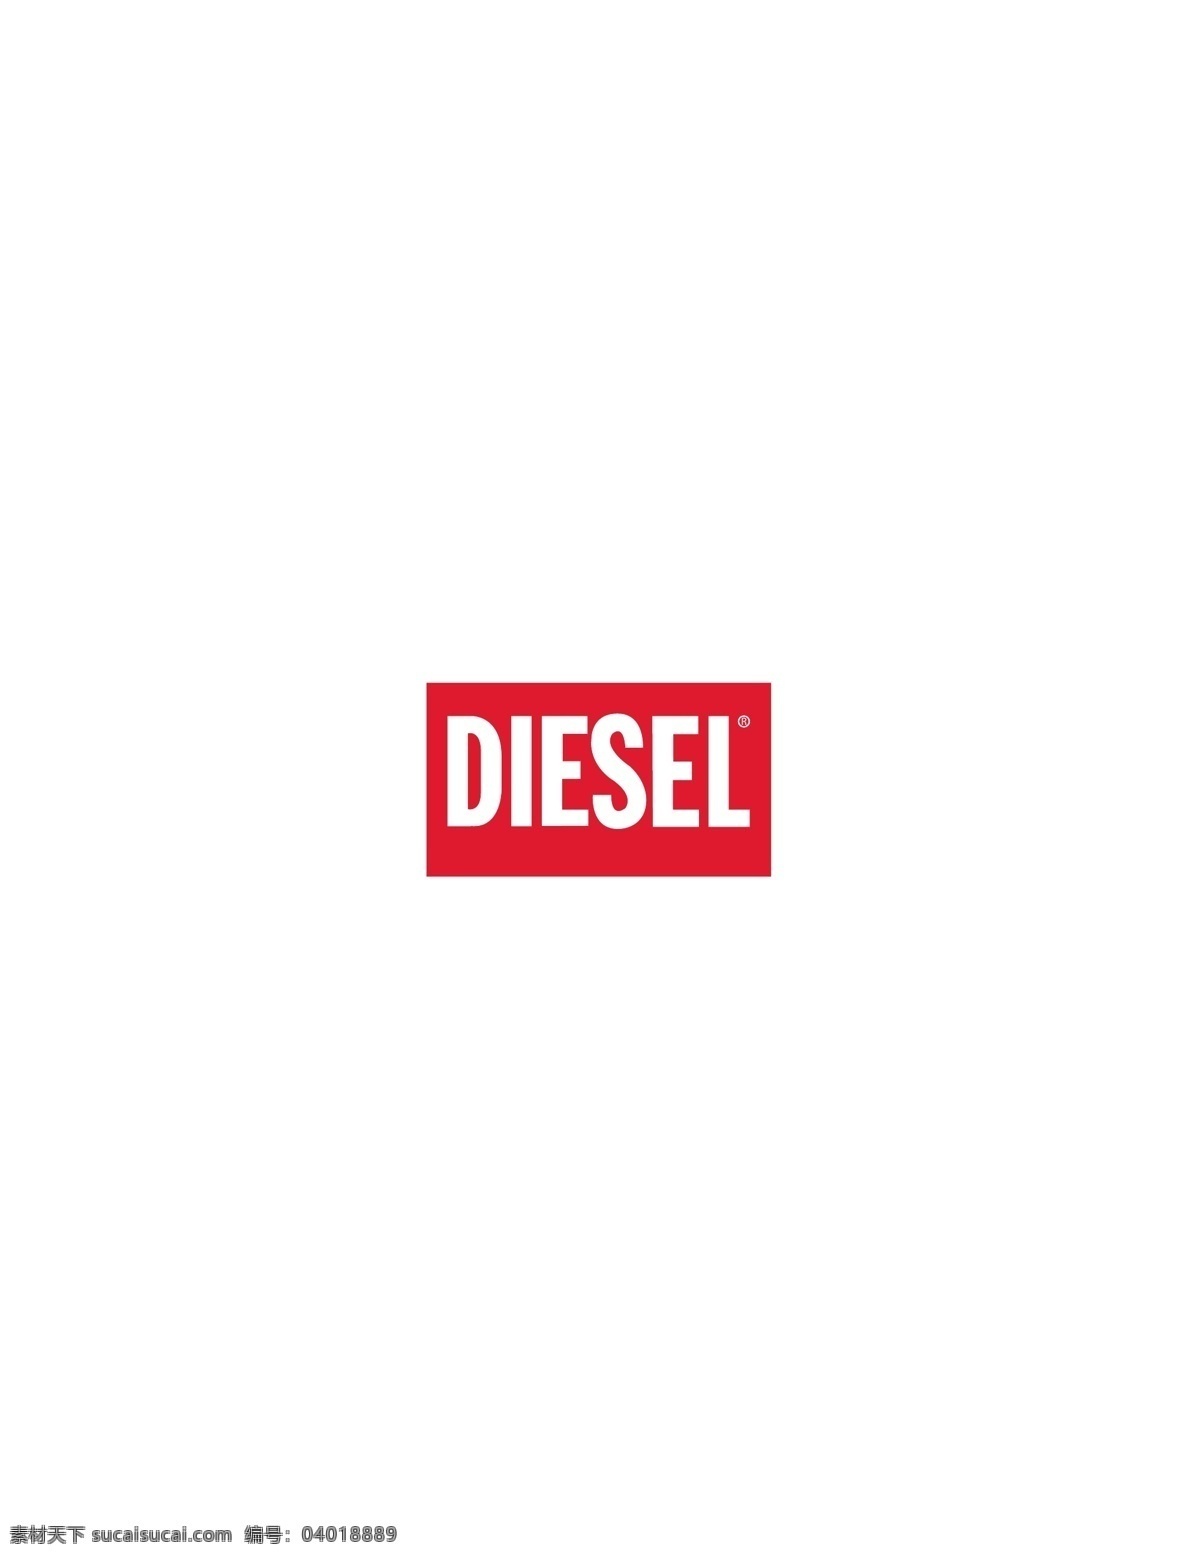 diesel logo大全 logo 设计欣赏 商业矢量 矢量下载 服饰 品牌 标志 标志设计 欣赏 网页矢量 矢量图 其他矢量图